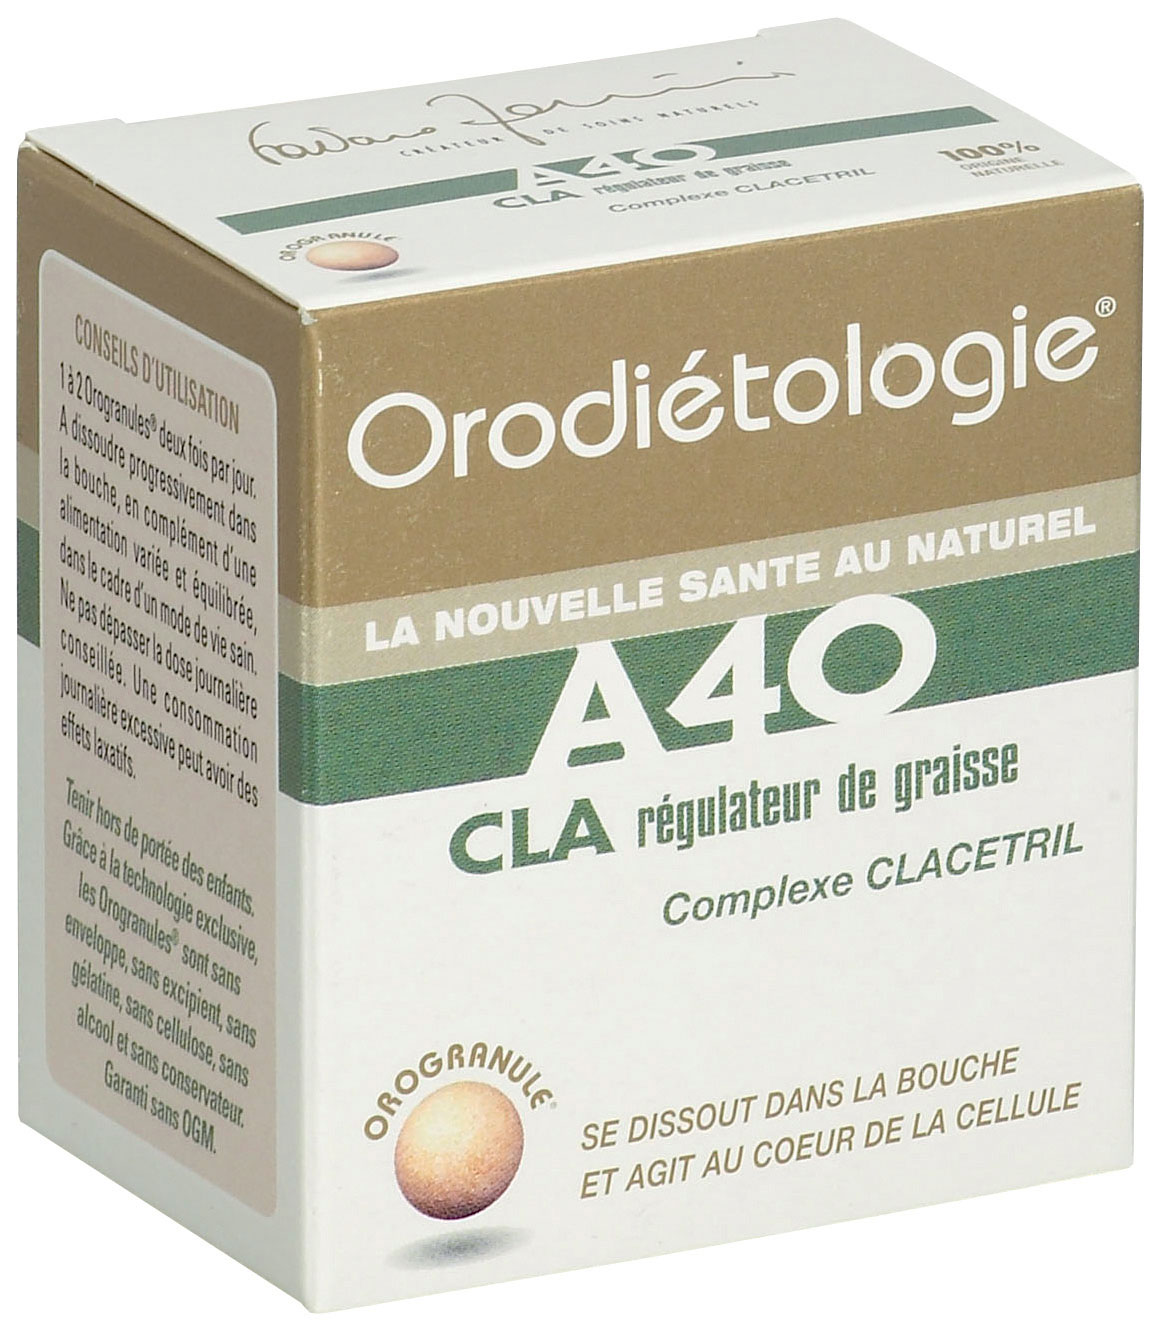 Image of A40 Cla Regulateur De Graisse